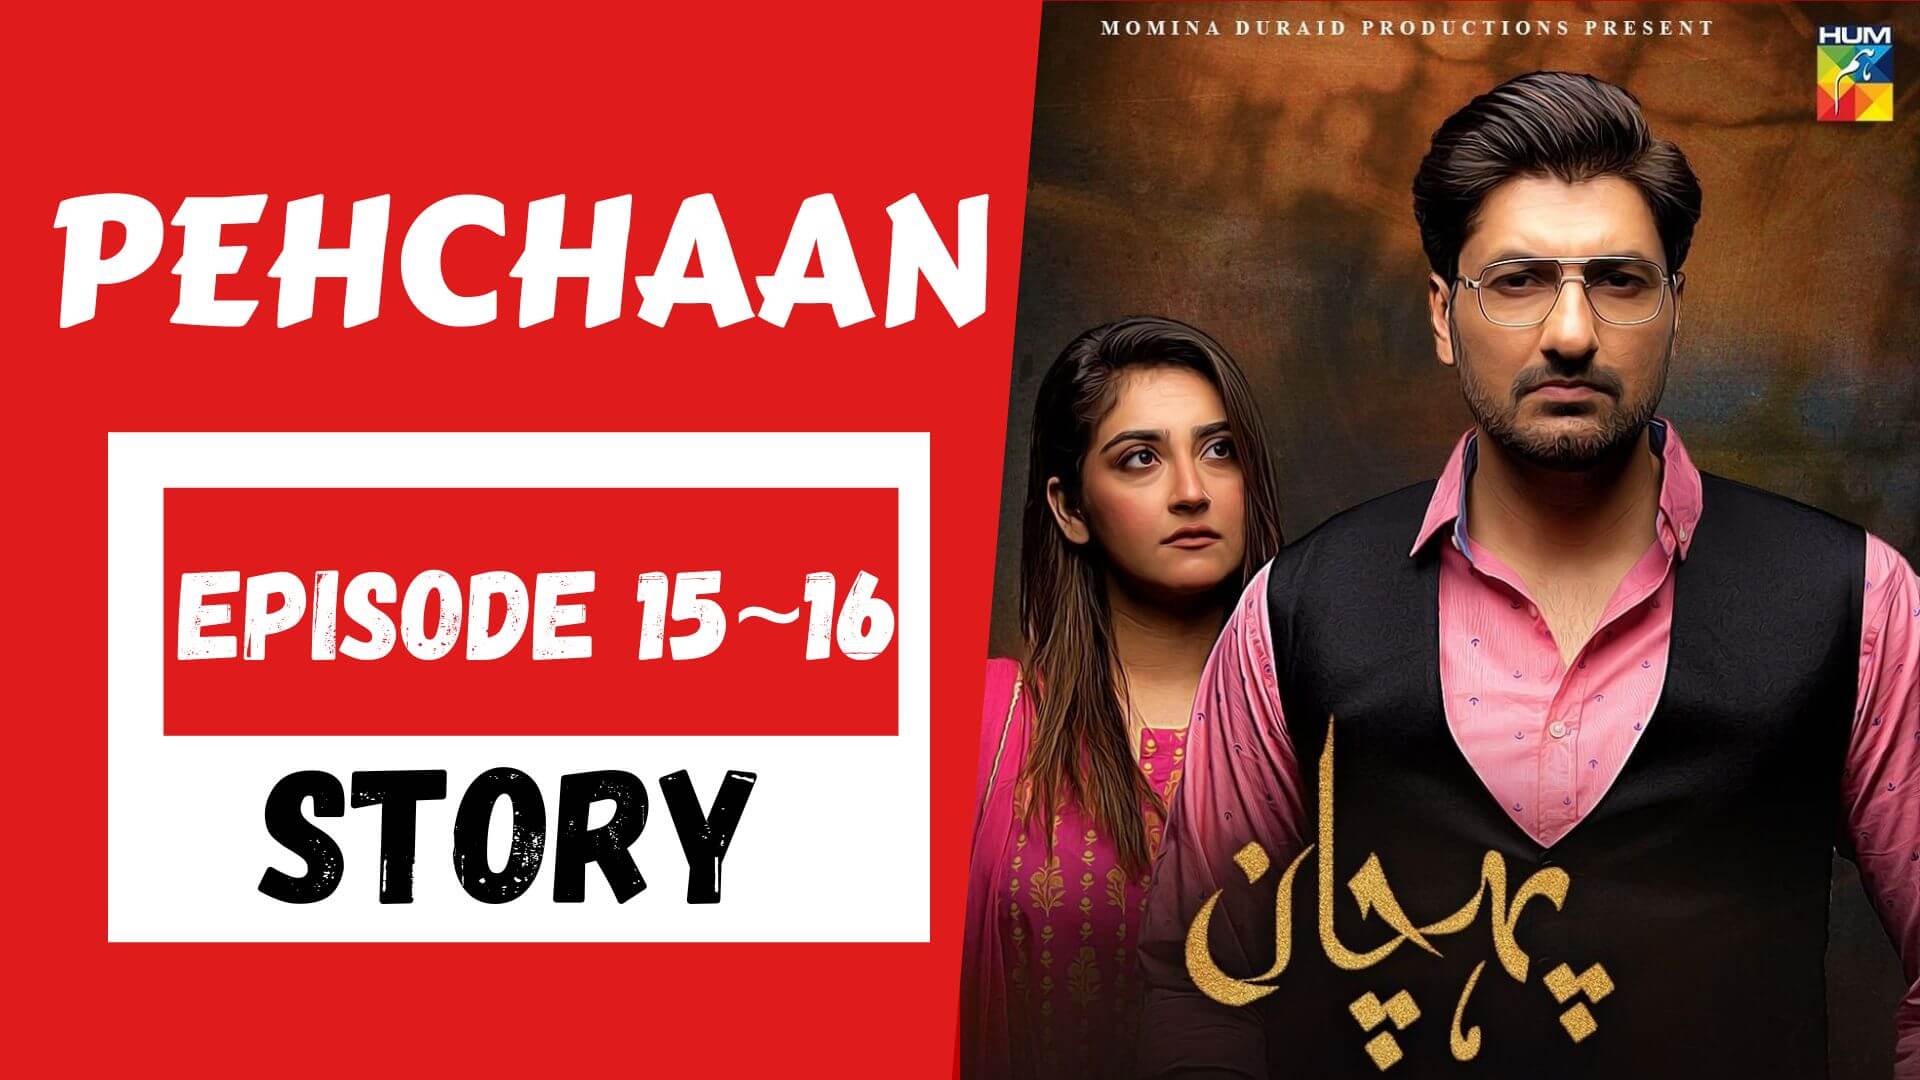 Pehchaan Episode 15_16 Story